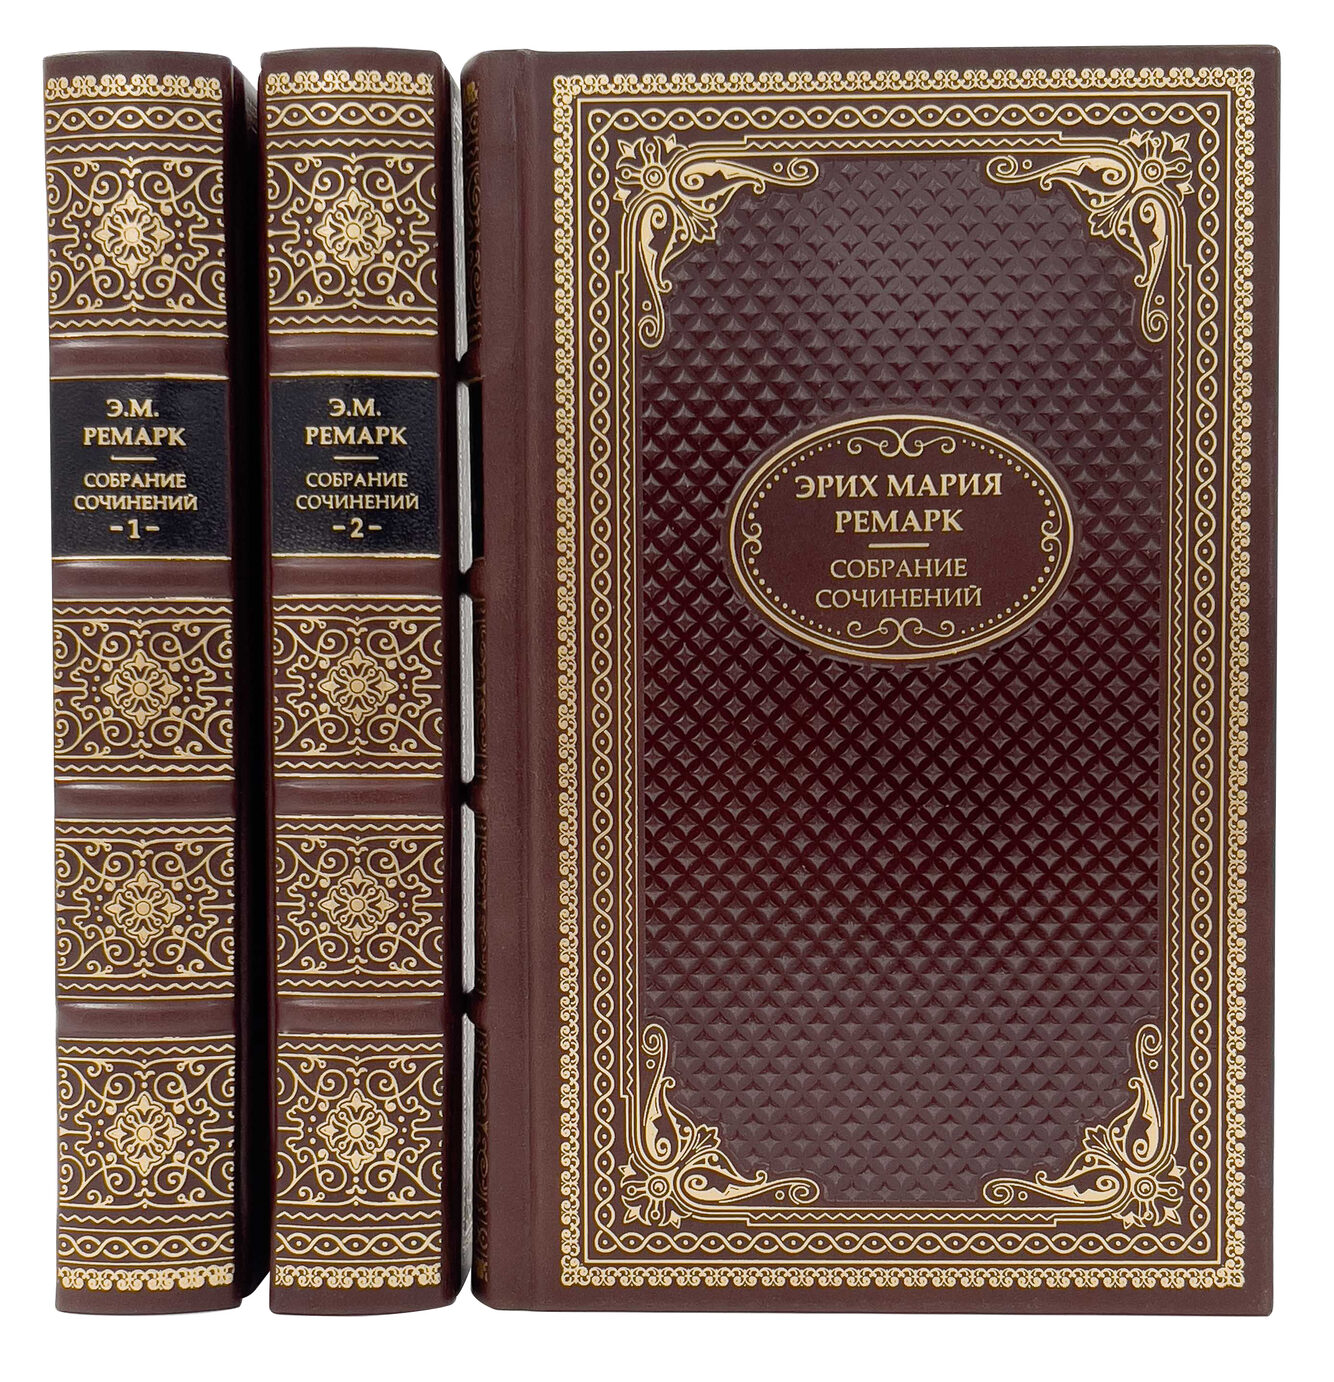 Золотой фонд мировой литературы (1000 томов)